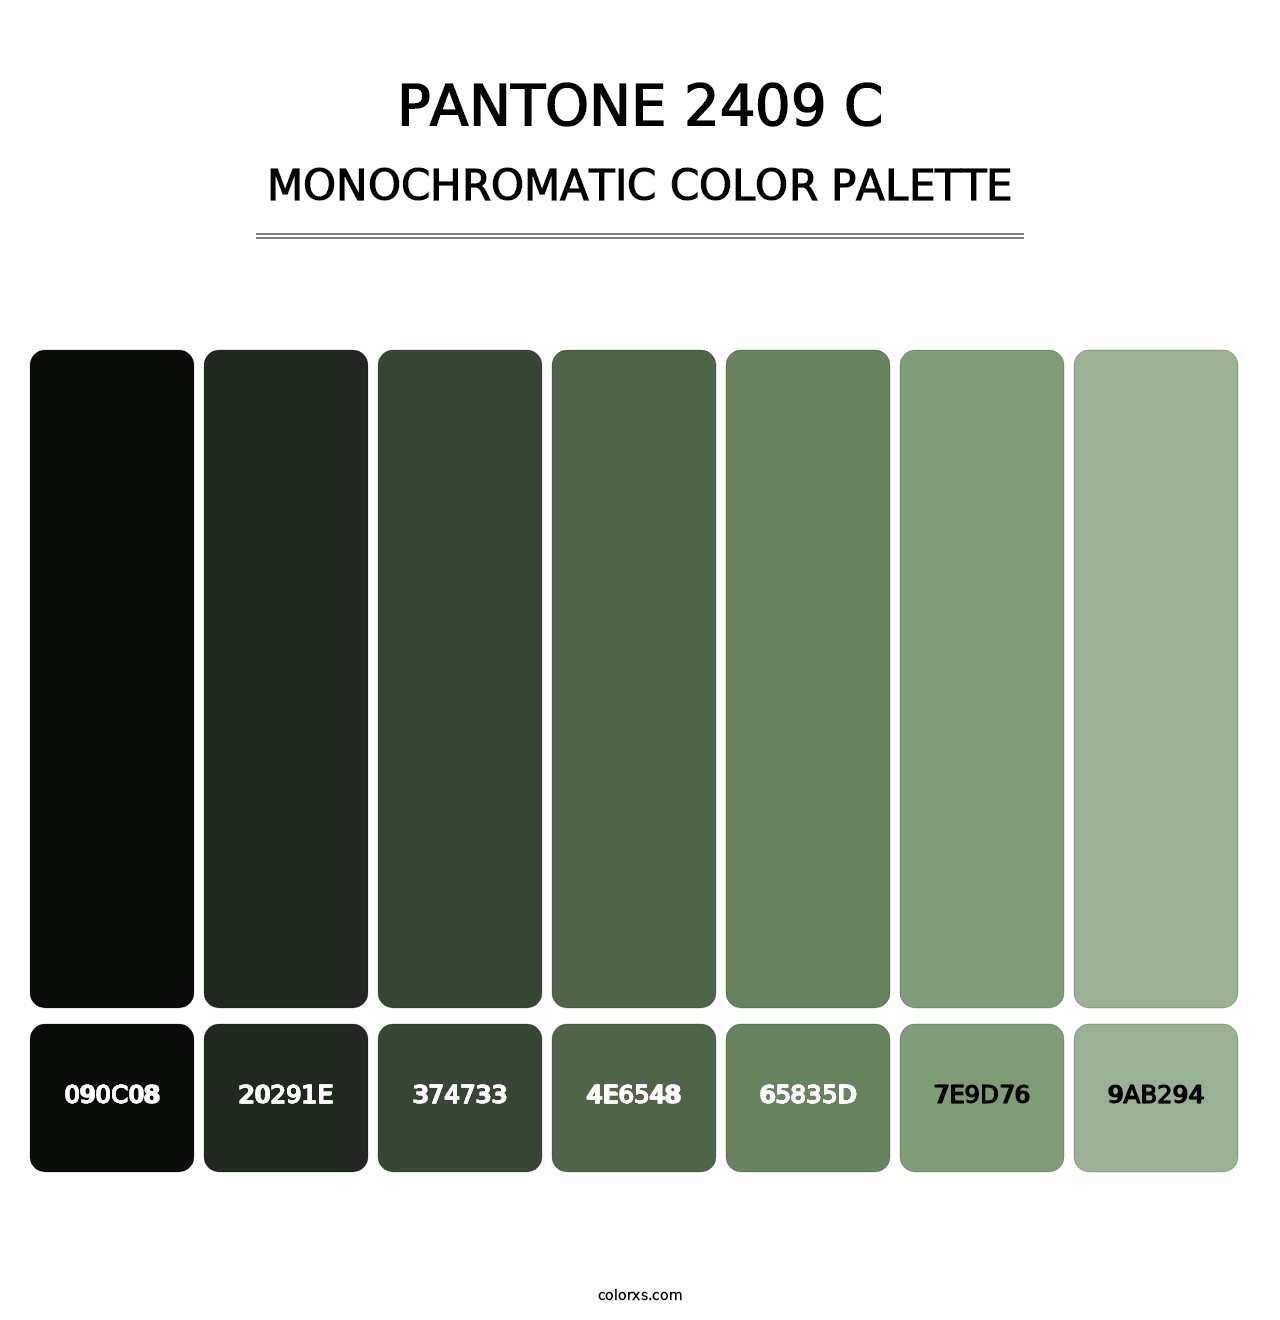 PANTONE 2409 C - Monochromatic Color Palette